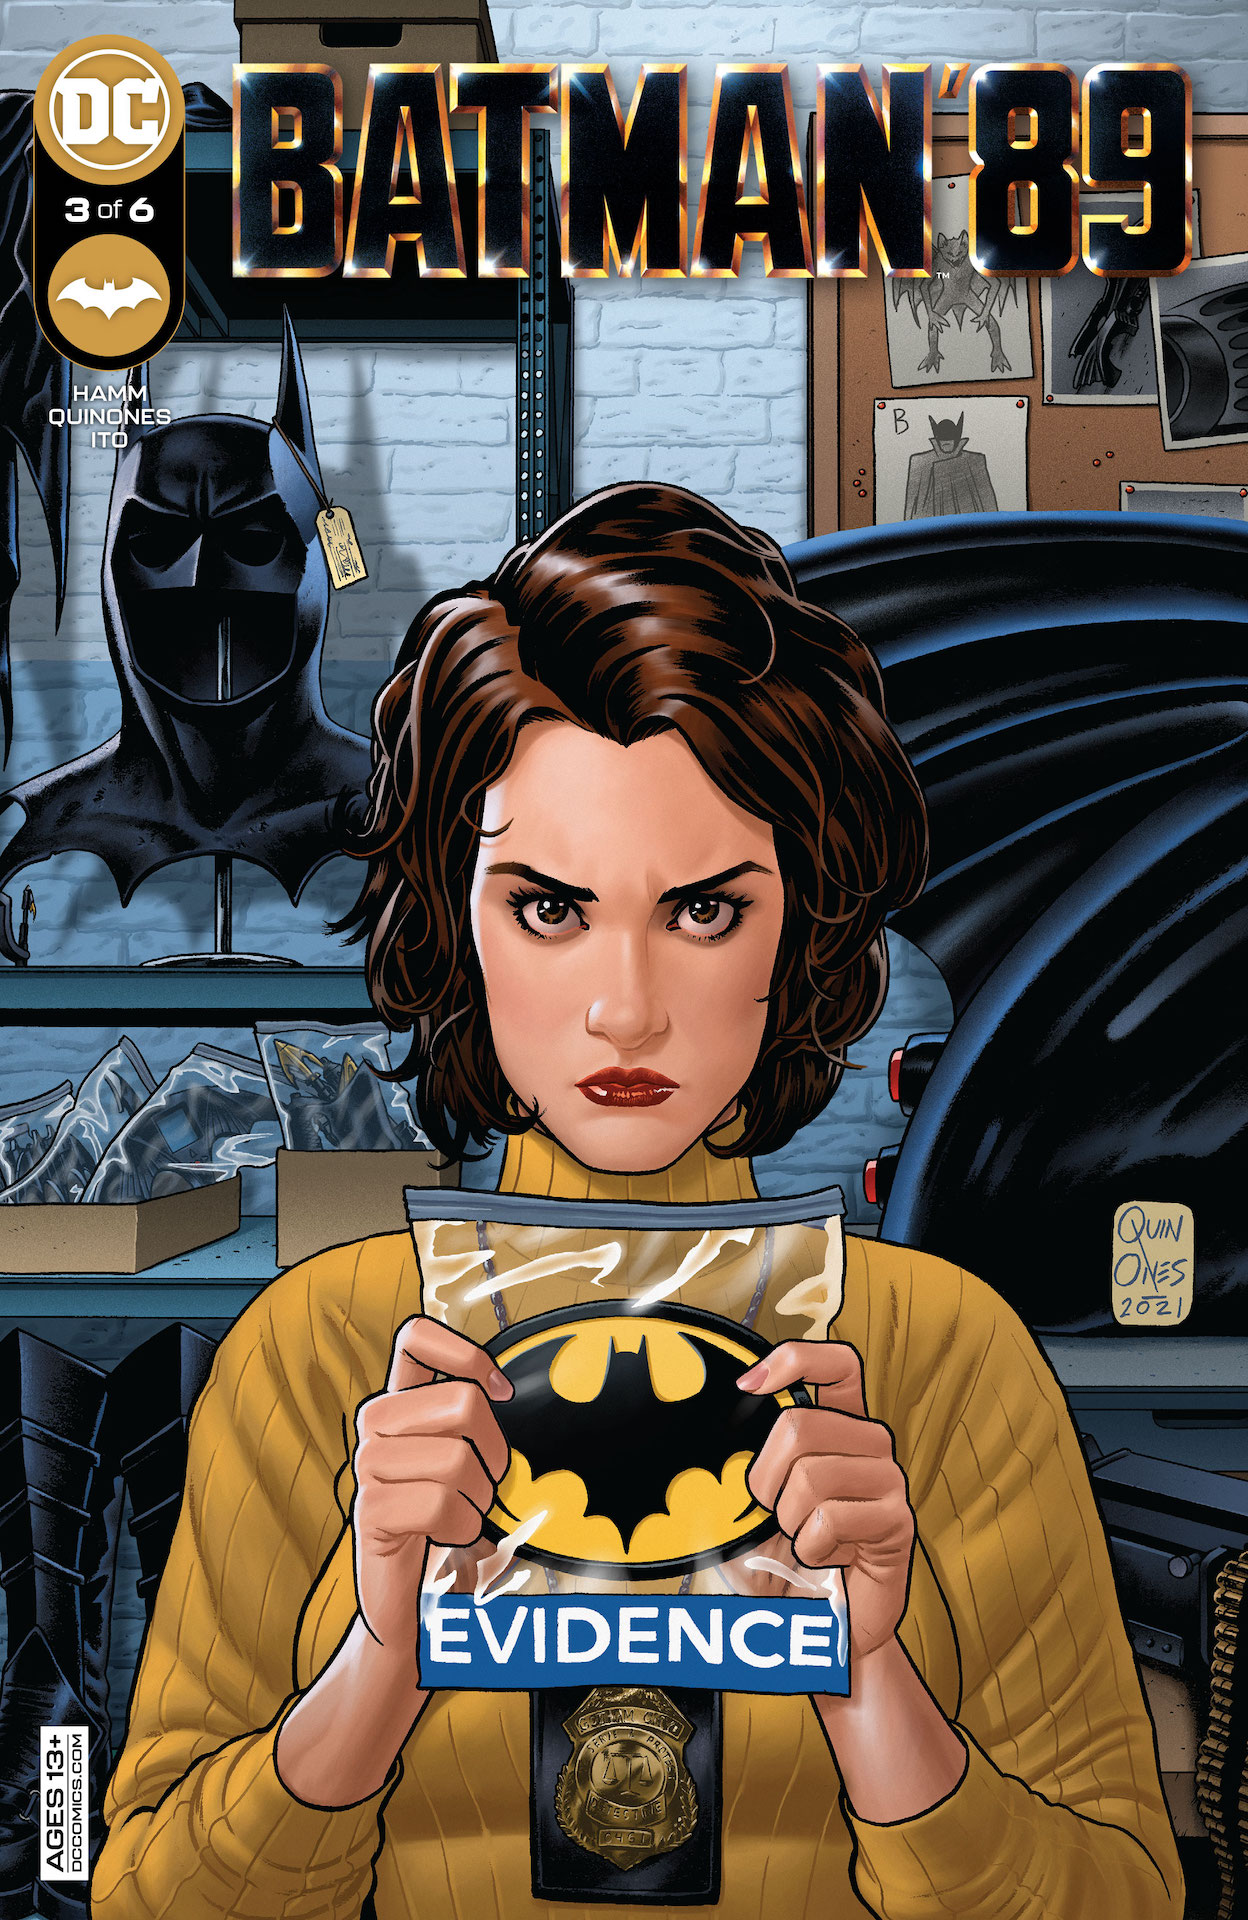 DC Preview: Batman '89 #3